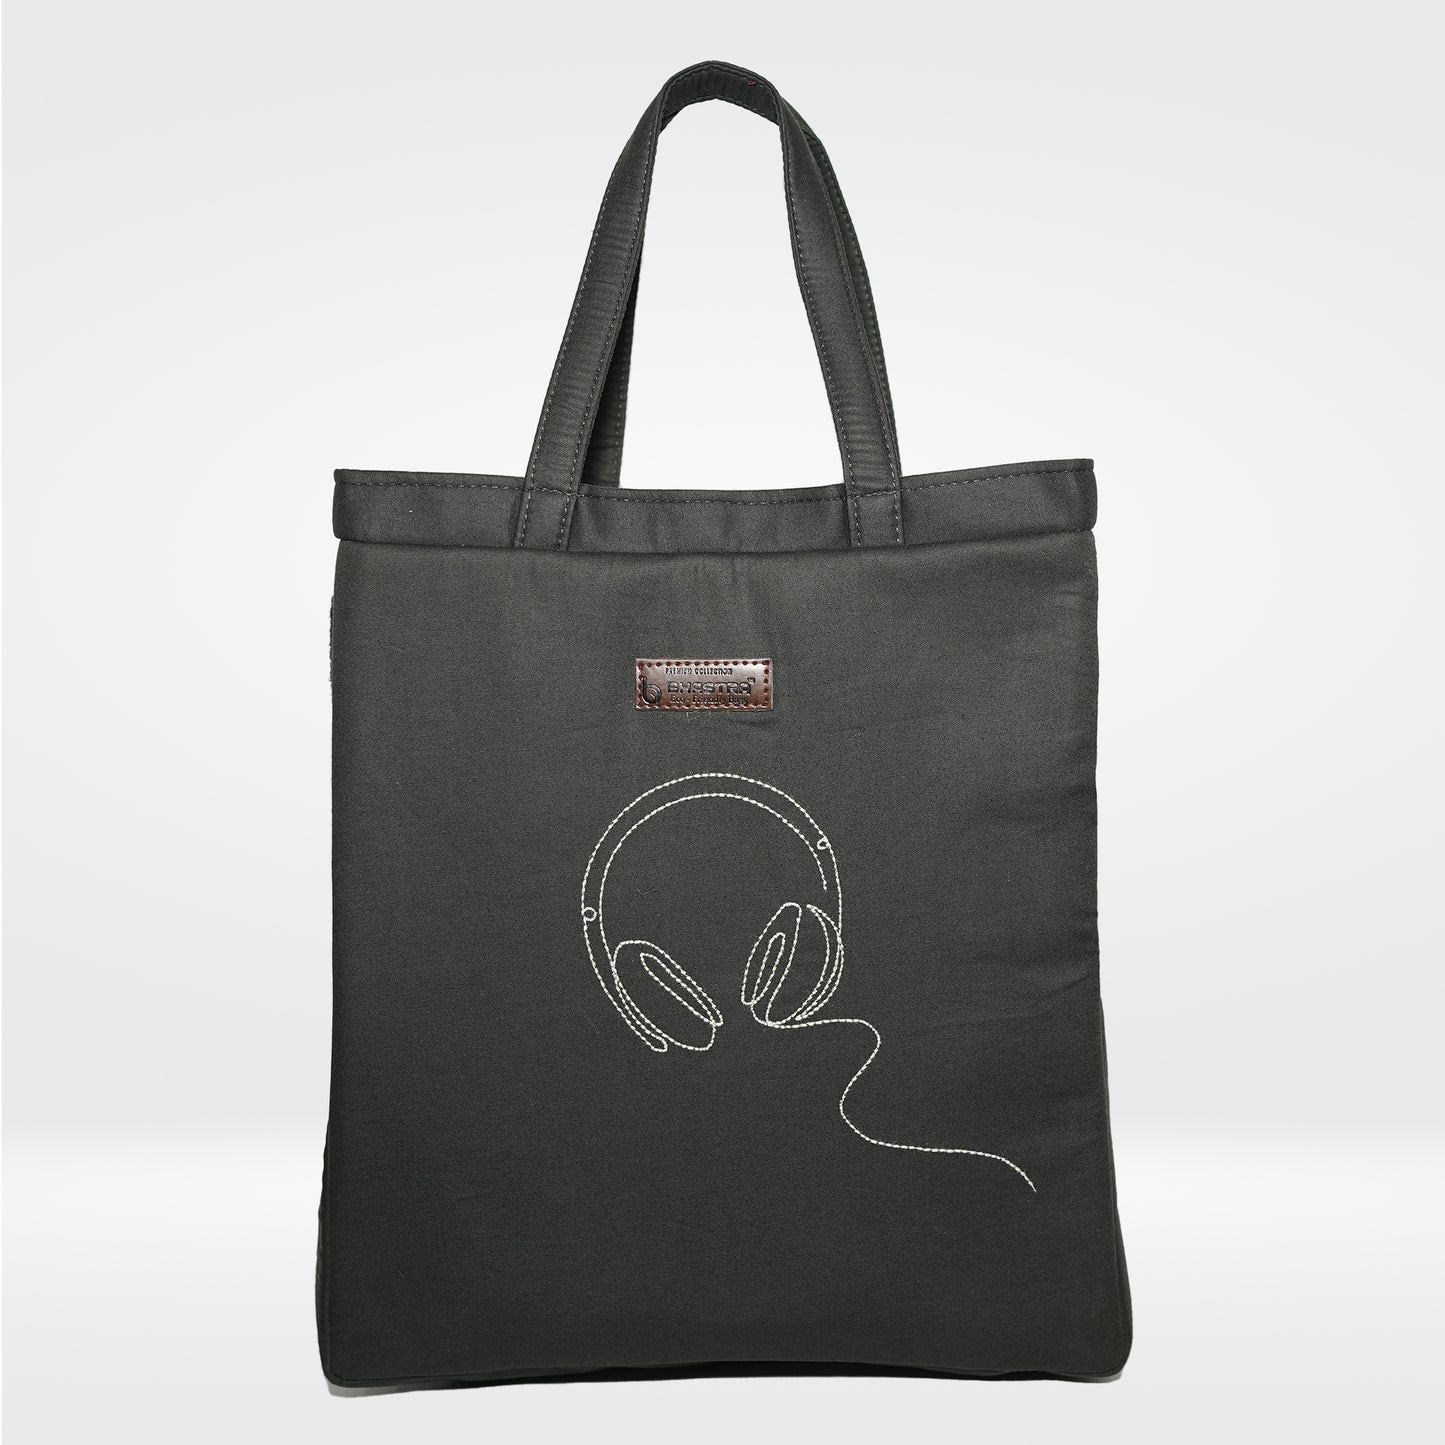 Headphone- -Basil Tiffin Bags